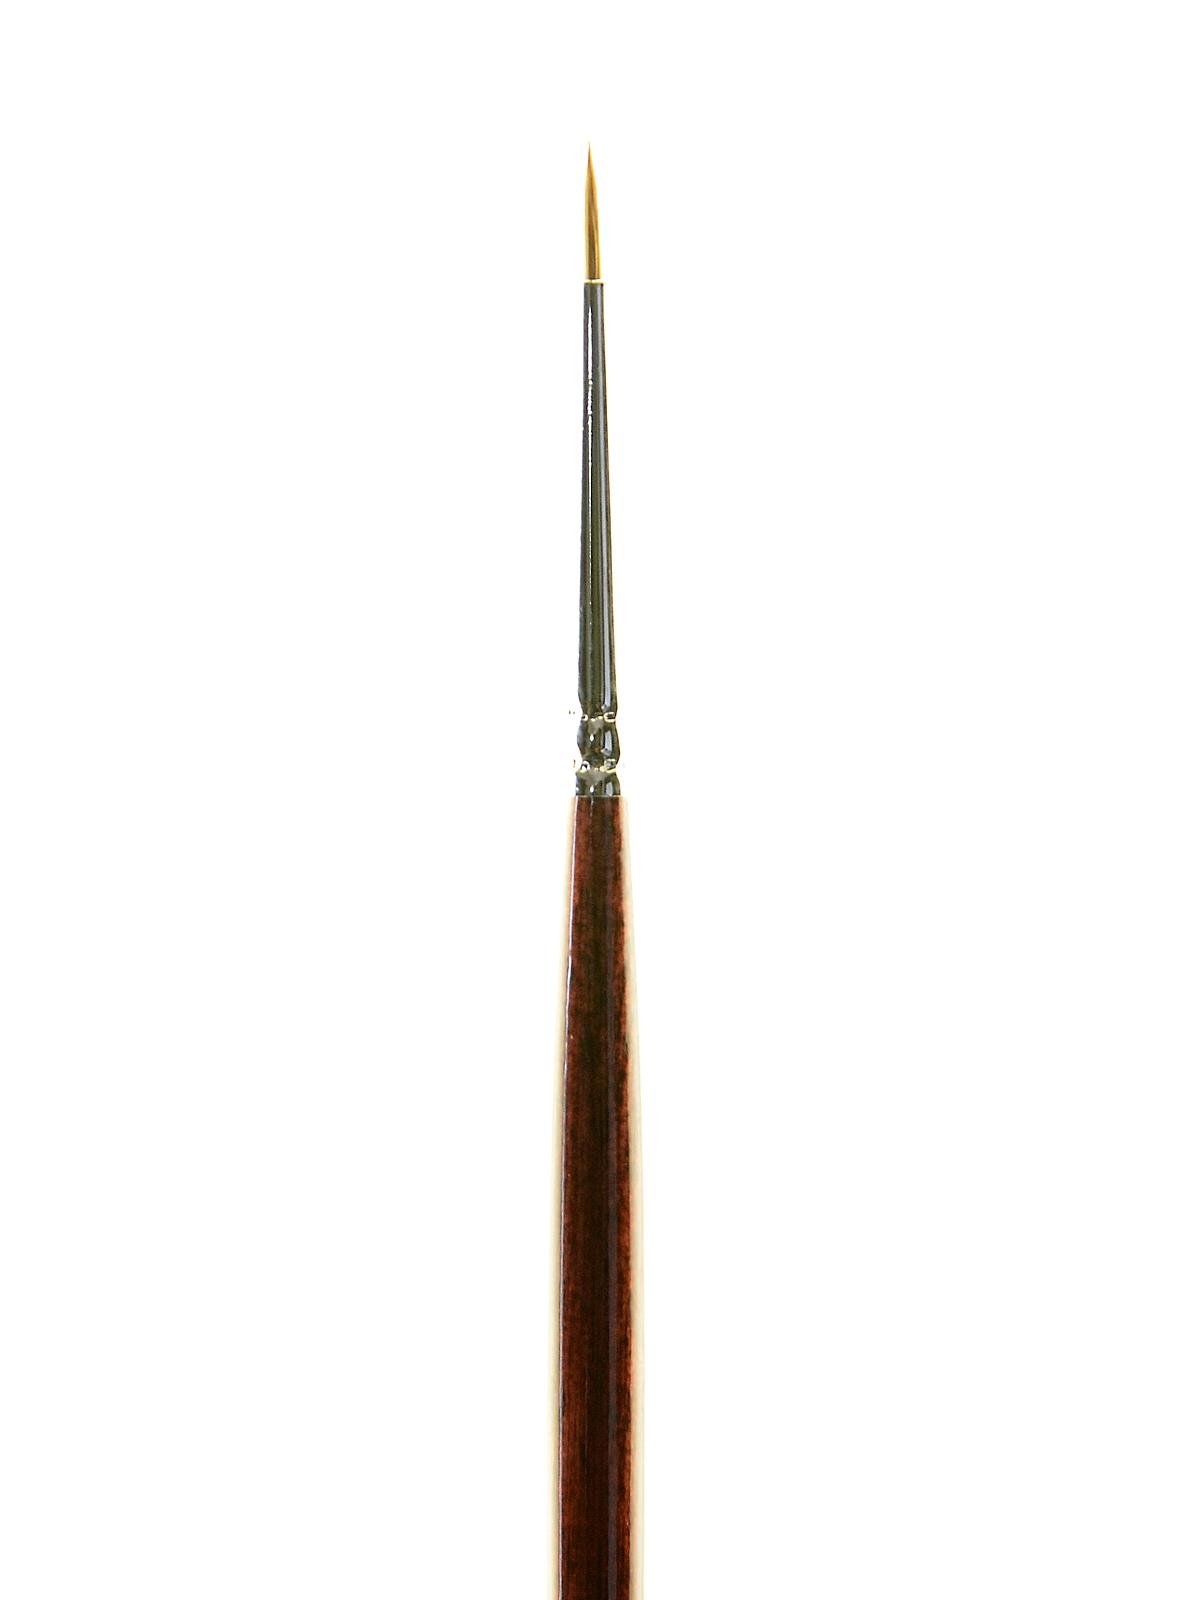 Princeton Series 7000 Long Handled Siberia Brushes